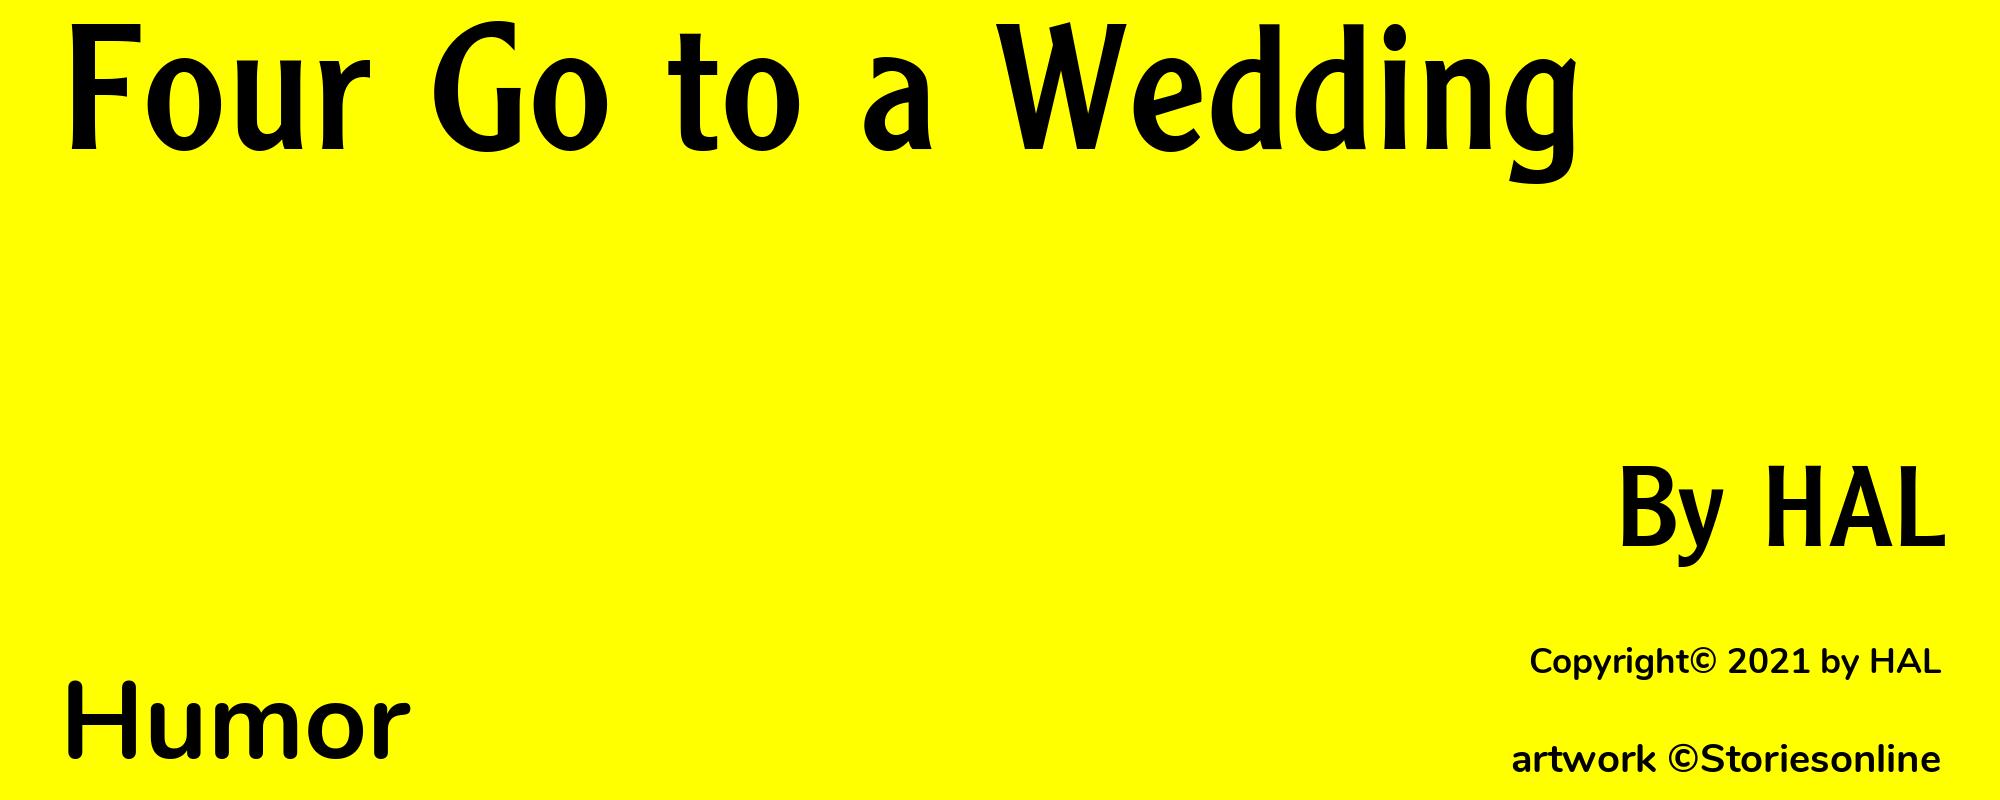 Four Go to a Wedding - Cover